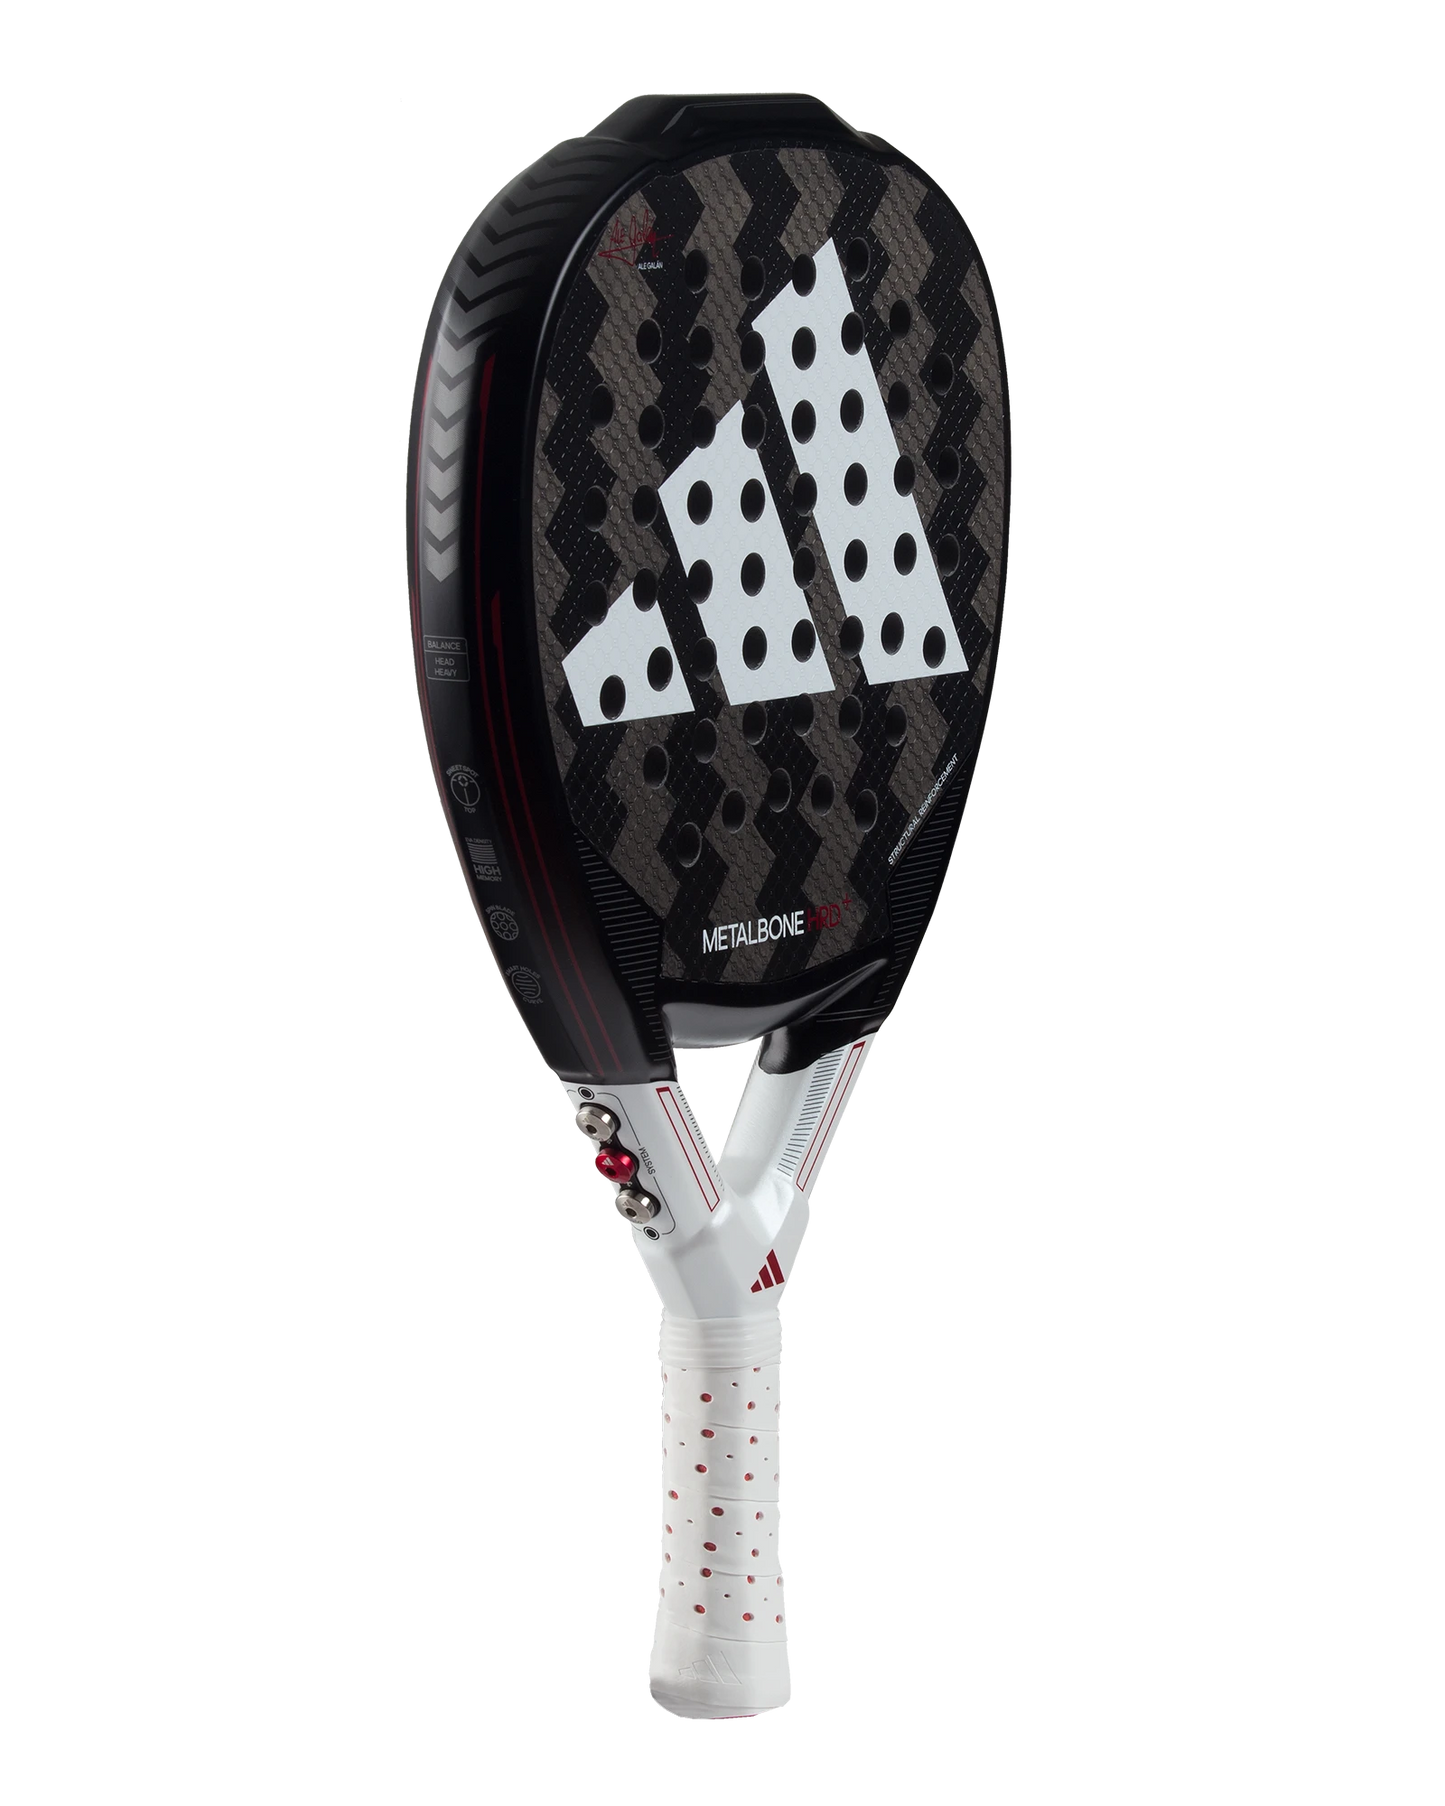  The Adidas Metalbone HRD 2024 Padel Racket